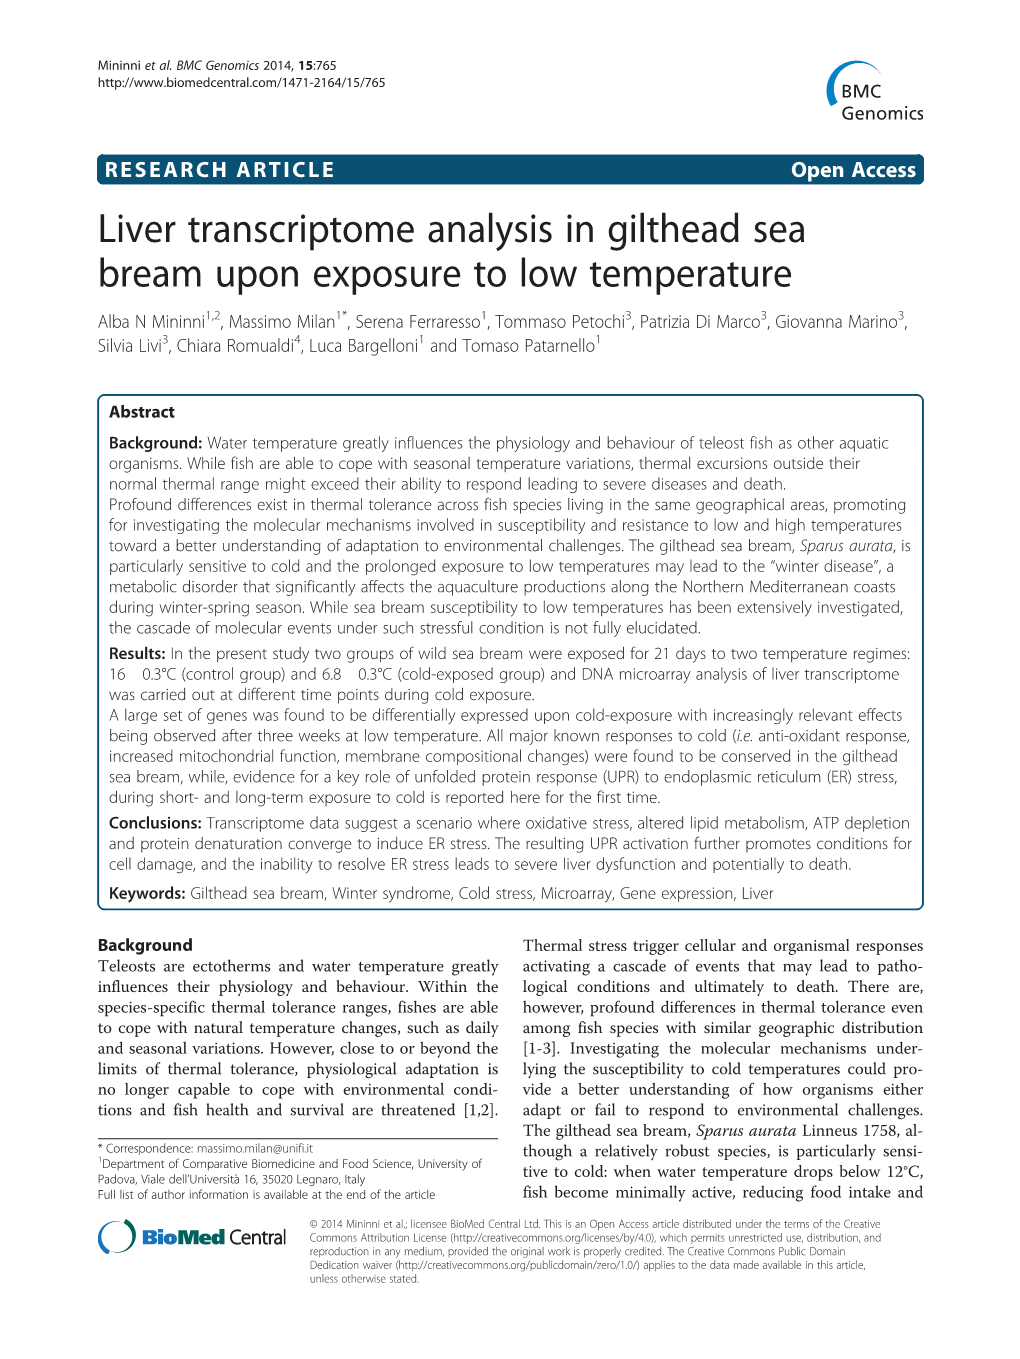 Liver Transcriptome Analysis in Gilthead Sea Bream Upon Exposure